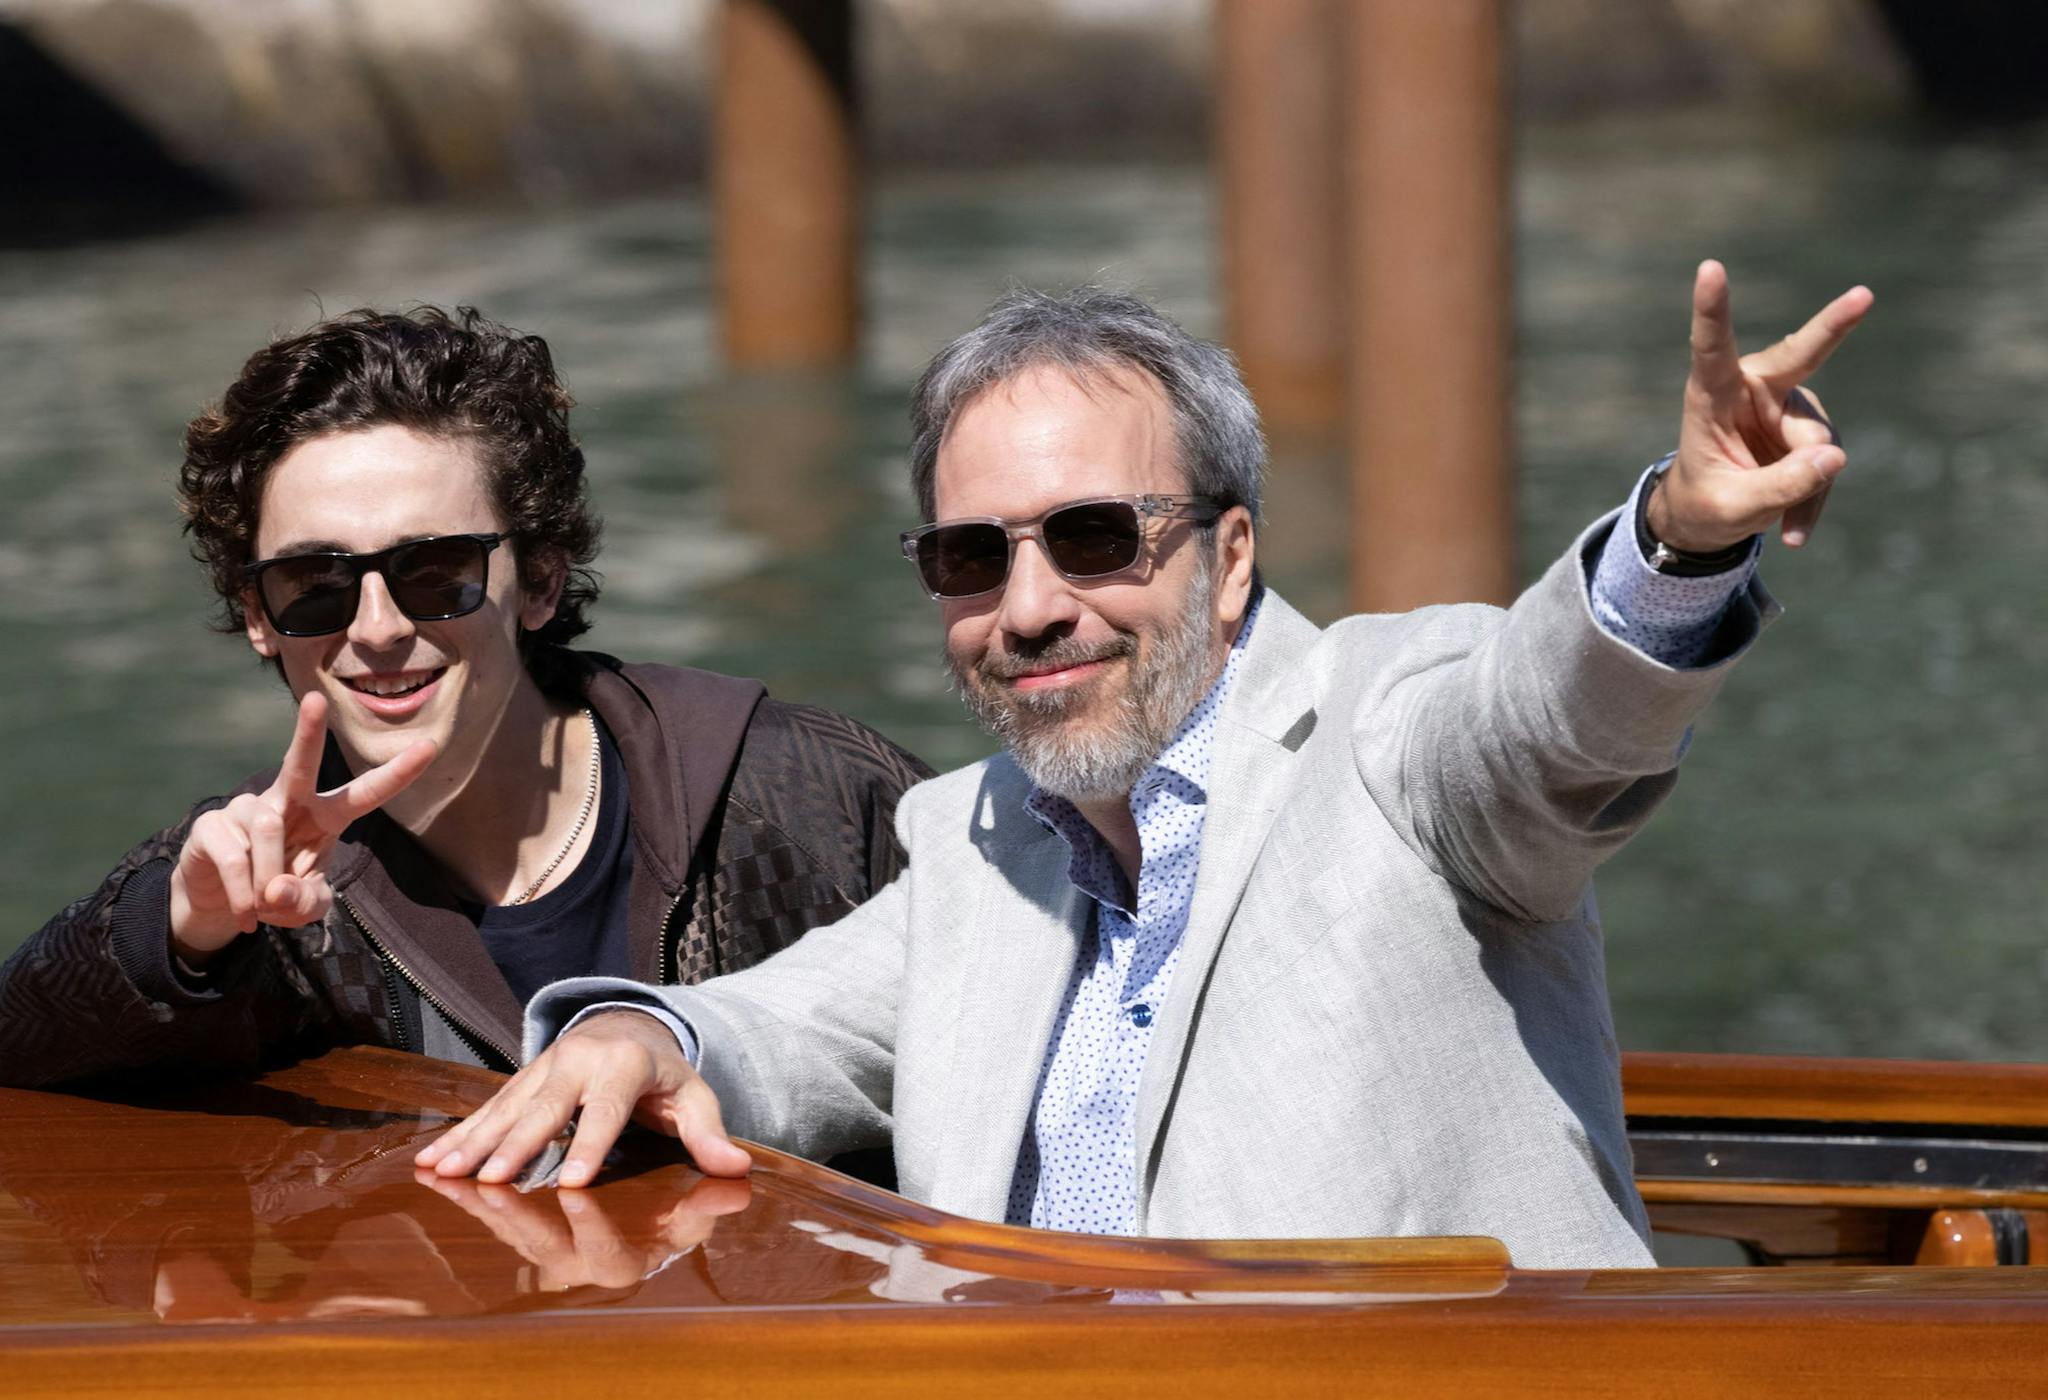 El actor Timothée Chalamet y el director Denis Villeneuve llegan a la Mostra de Venecia en 2021 para presentar 'Dune'